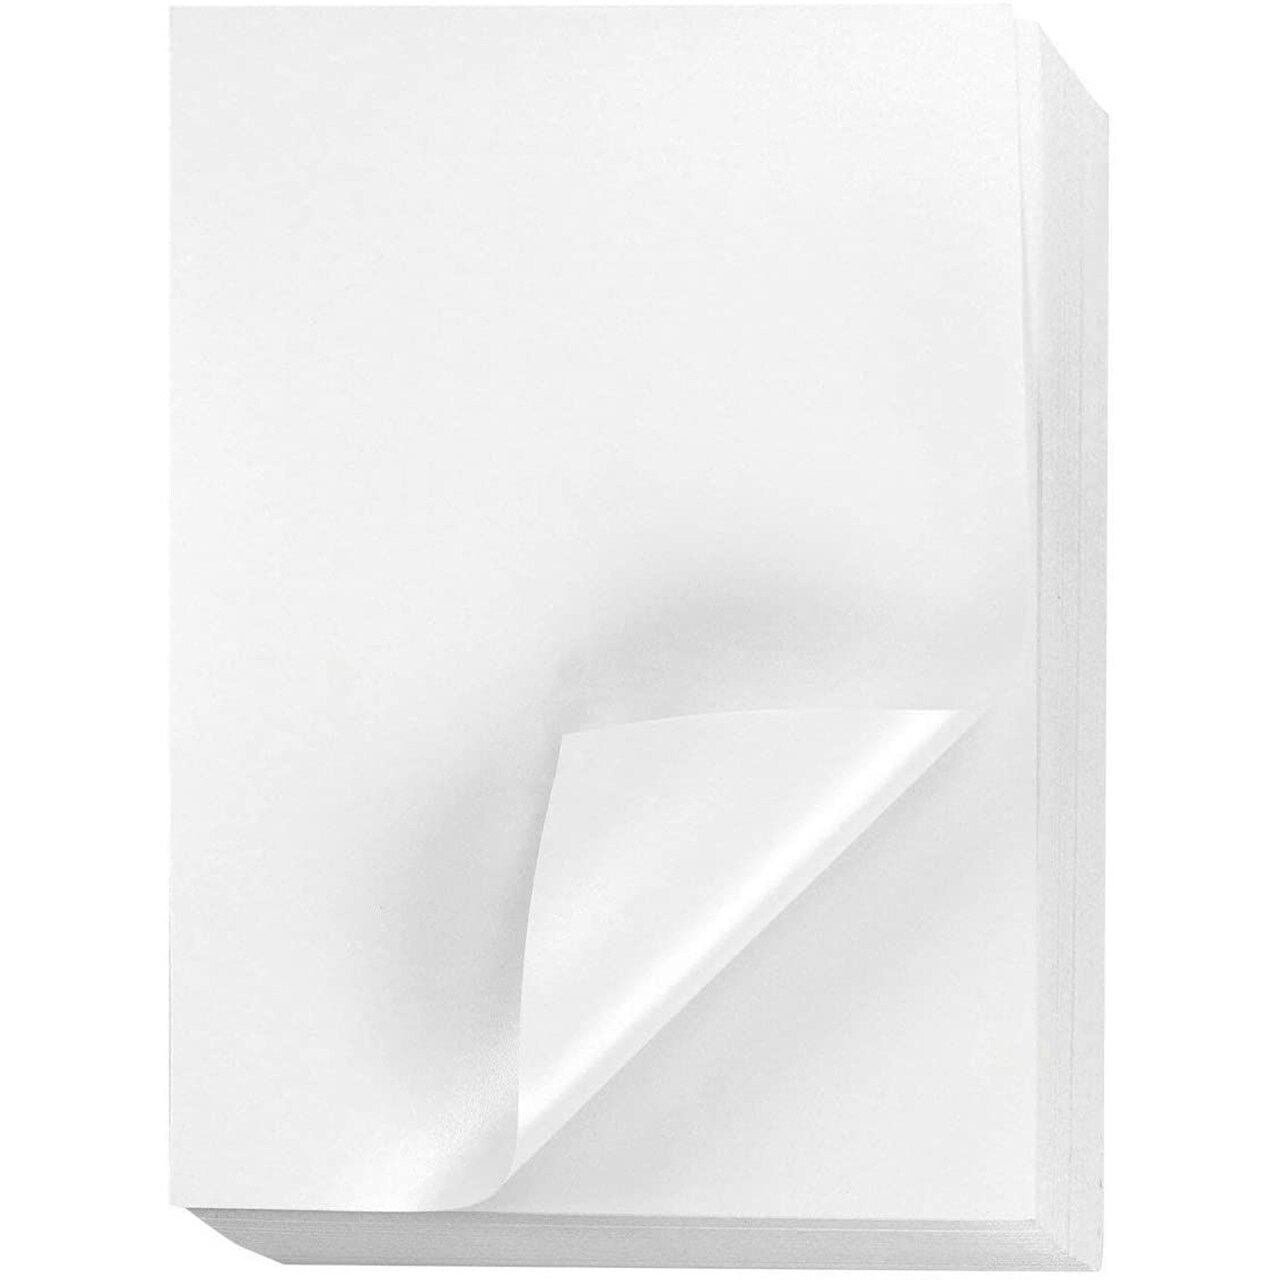 96 Sheets White Metallic Shimmer Paper for Printer, Letter Size